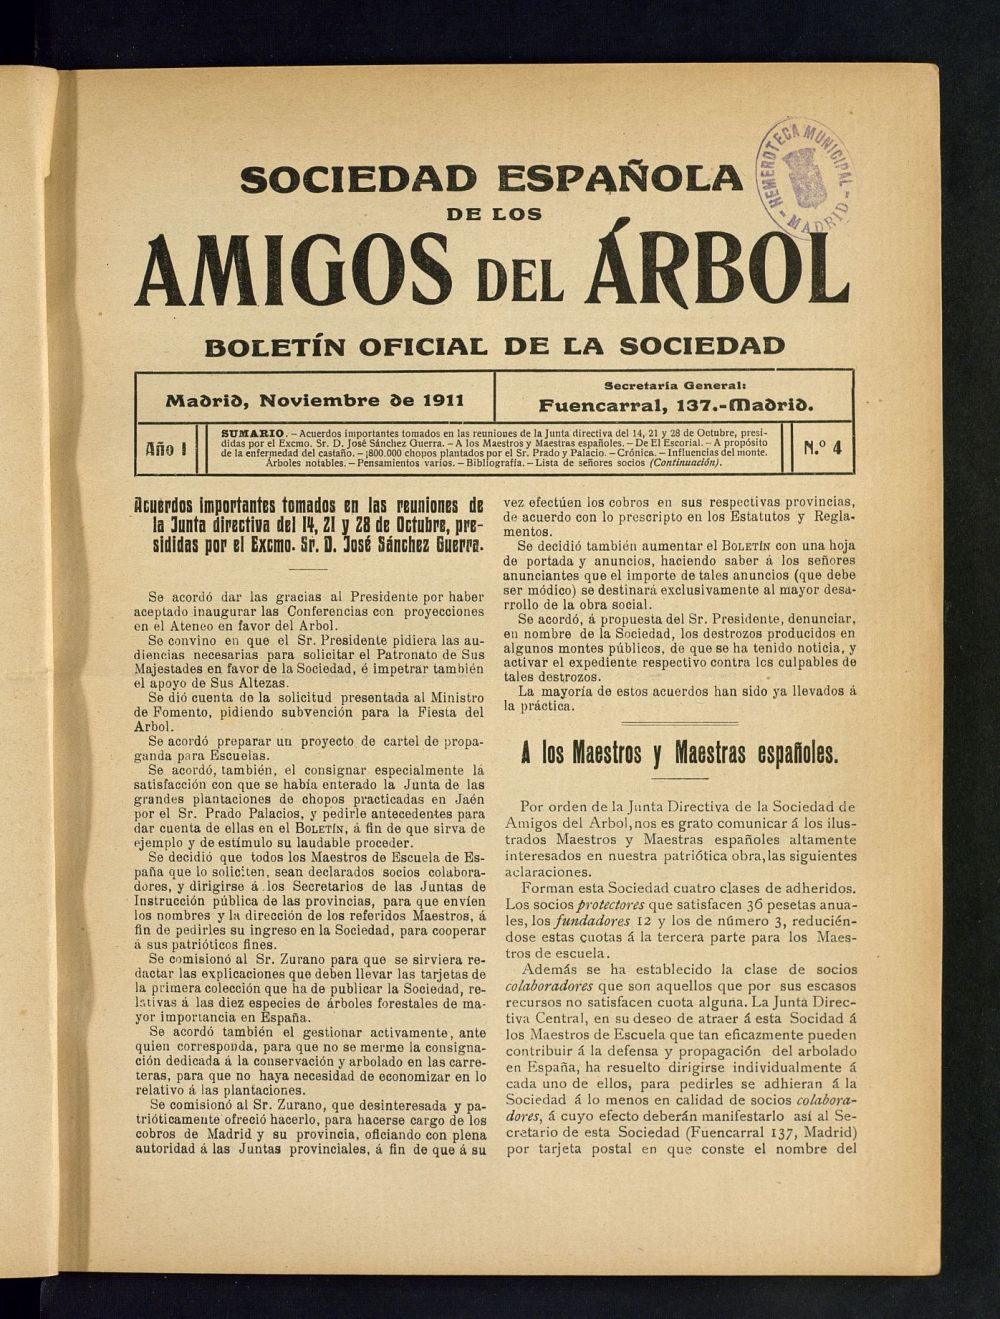 Boletn Comisin organizadora de la Sociedad Espaola de los amigos del rbol de noviembre de 1911